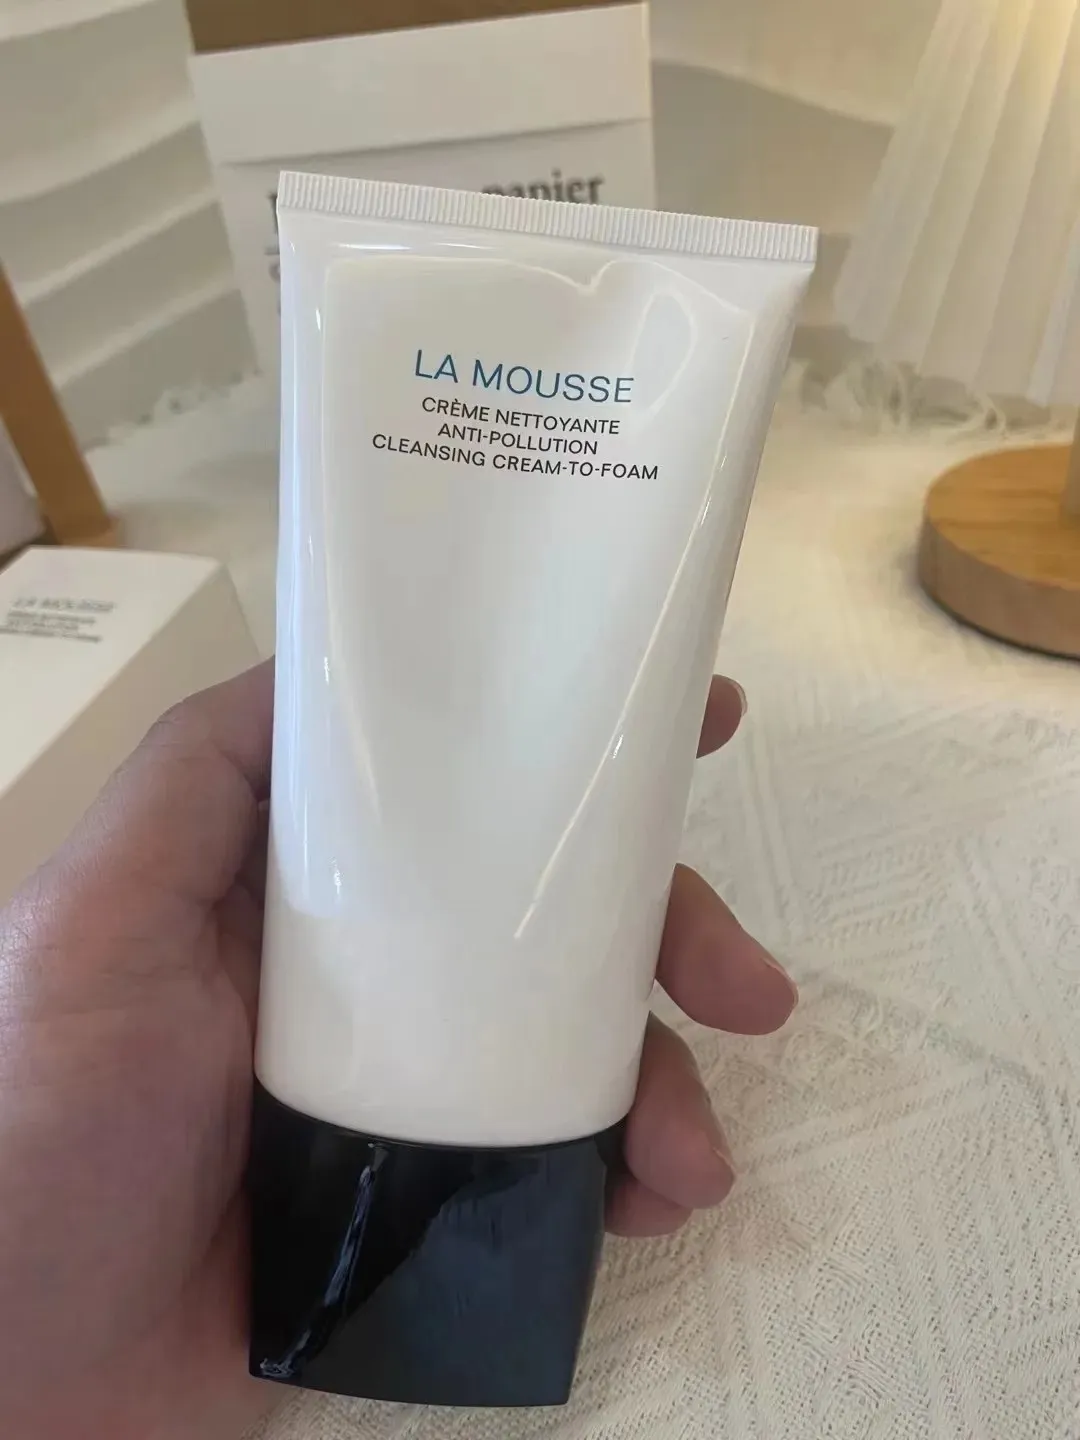 Topp La Mousse Cleanser Foam Skin Care Cleansing Cream till Foam 150ml grossist